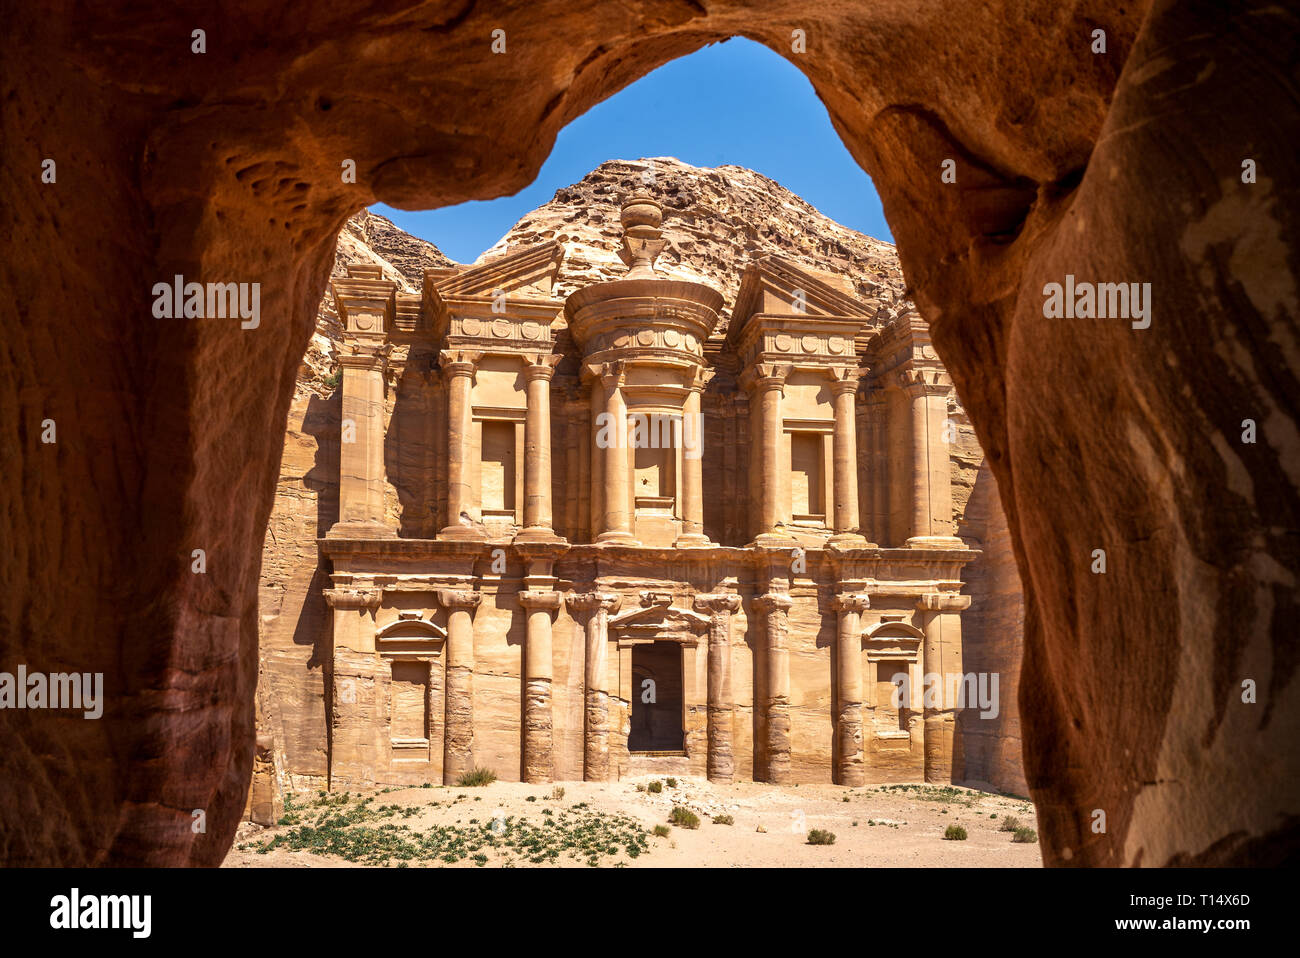 Ad Deir (The Monastery) at petra, jodan Stock Photo